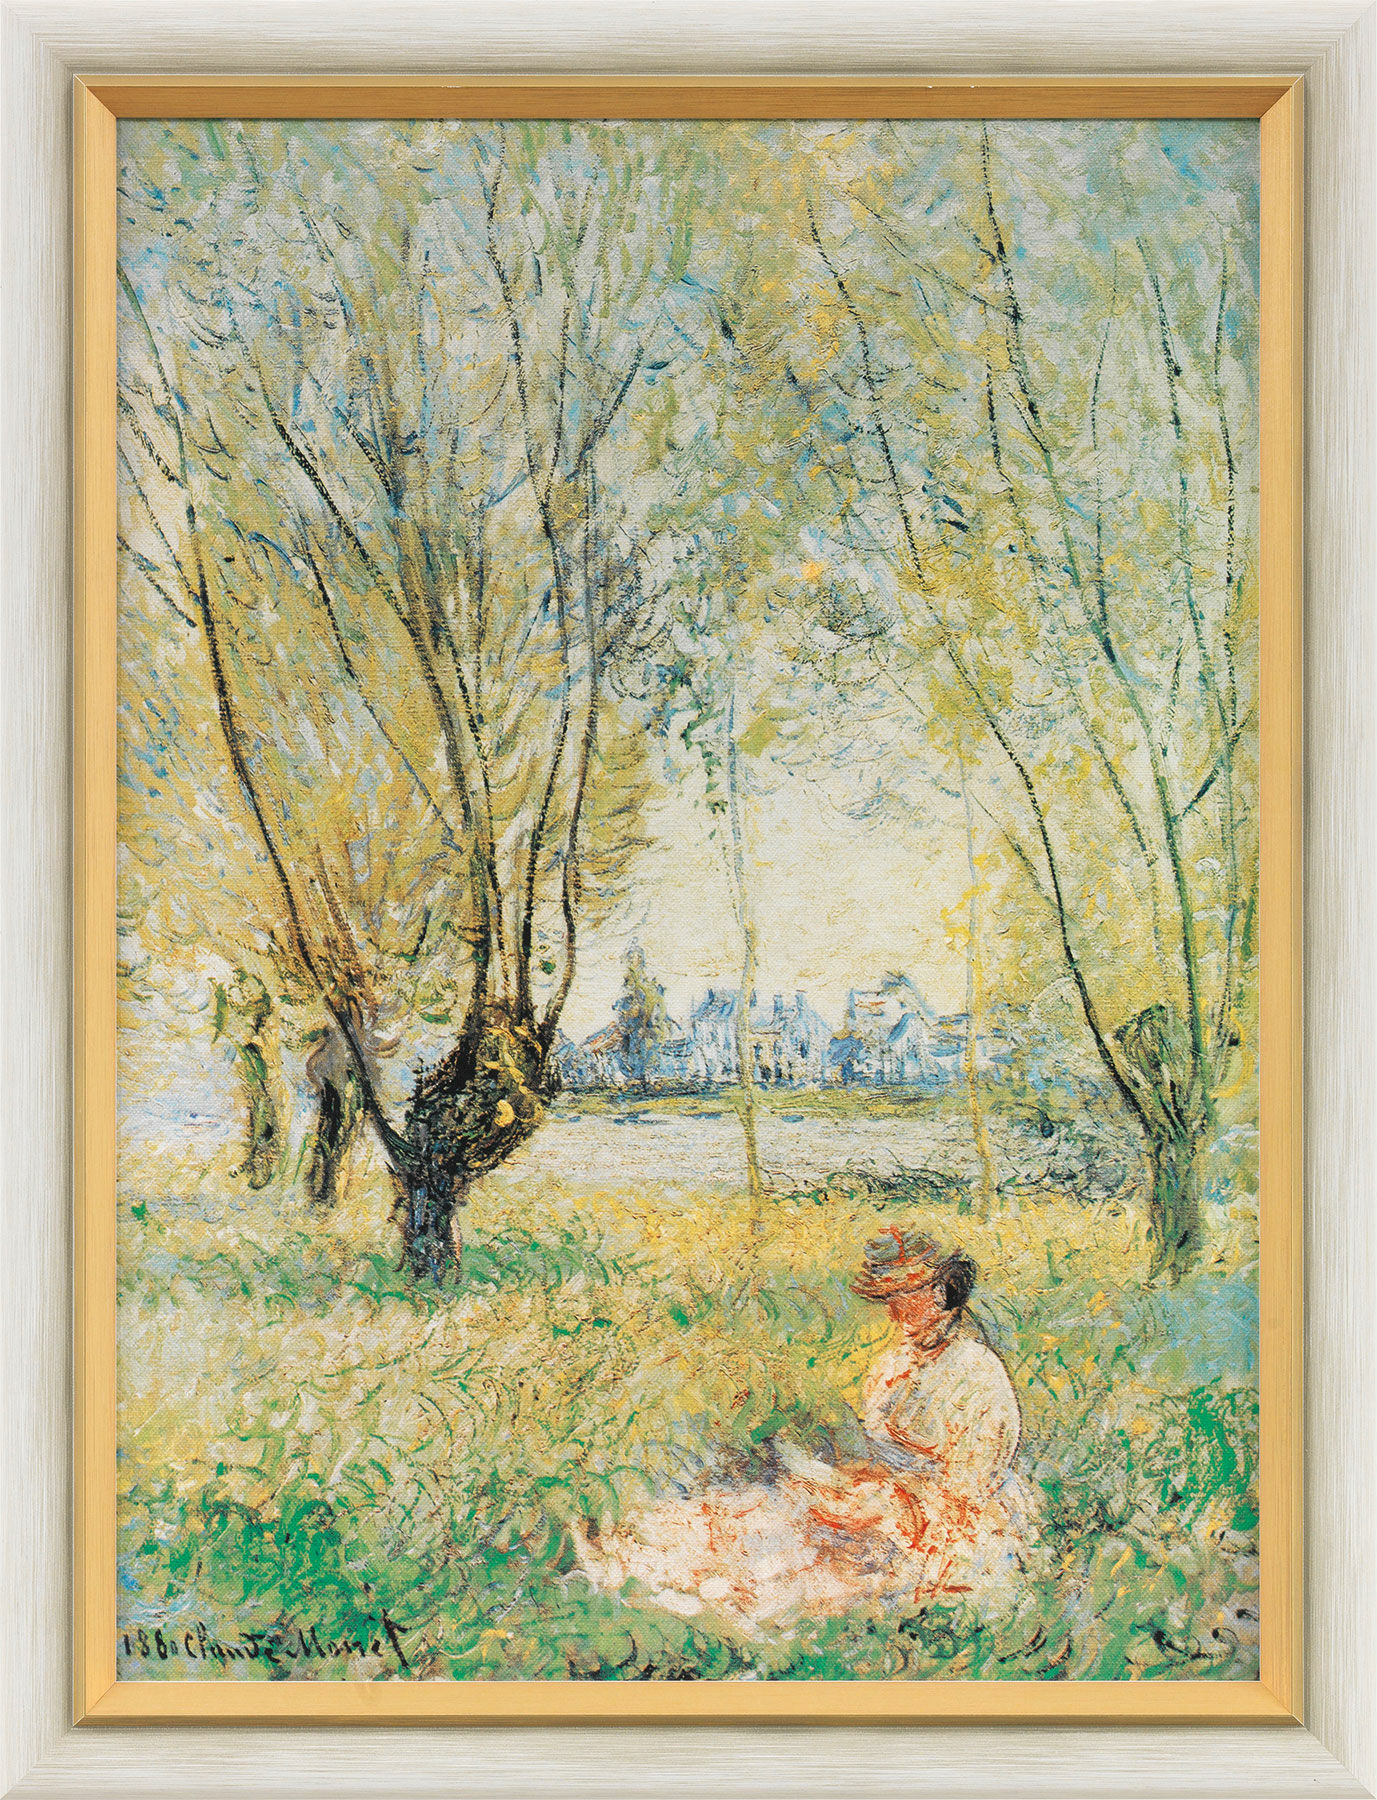 Beeld "Zittende vrouw onder de wilgen" (1880), ingelijst von Claude Monet